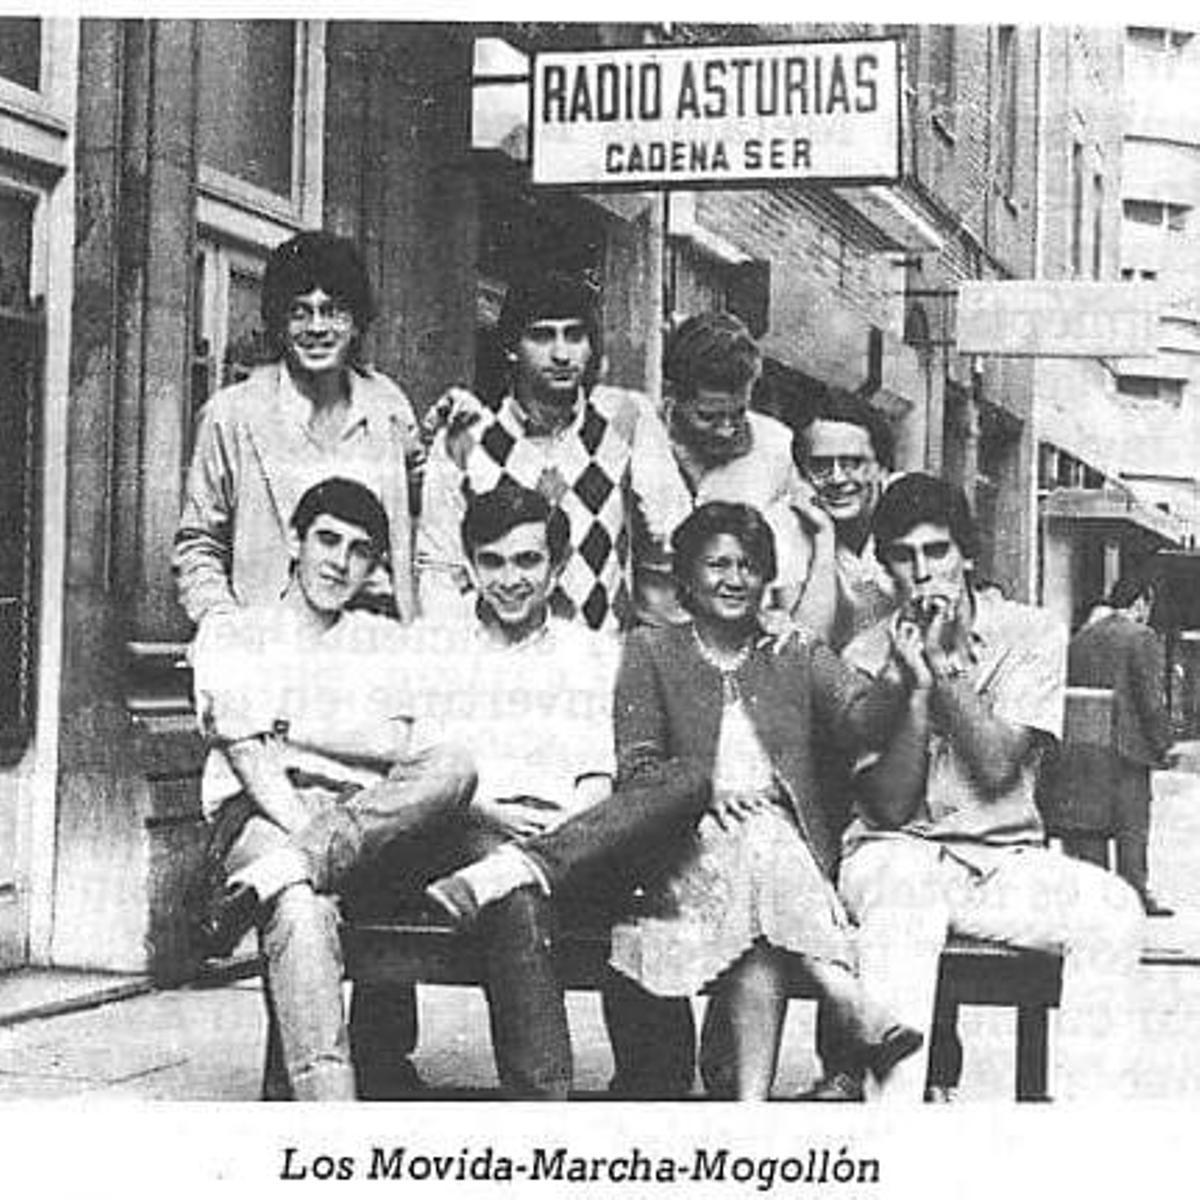 Paloma Toyos, sentada, en el centro, con el equipo de Radio Asturias, con su hermano Alberto arriba a la izquierda y Javier Asenjo a la derecha, con la mano en la mejilla.